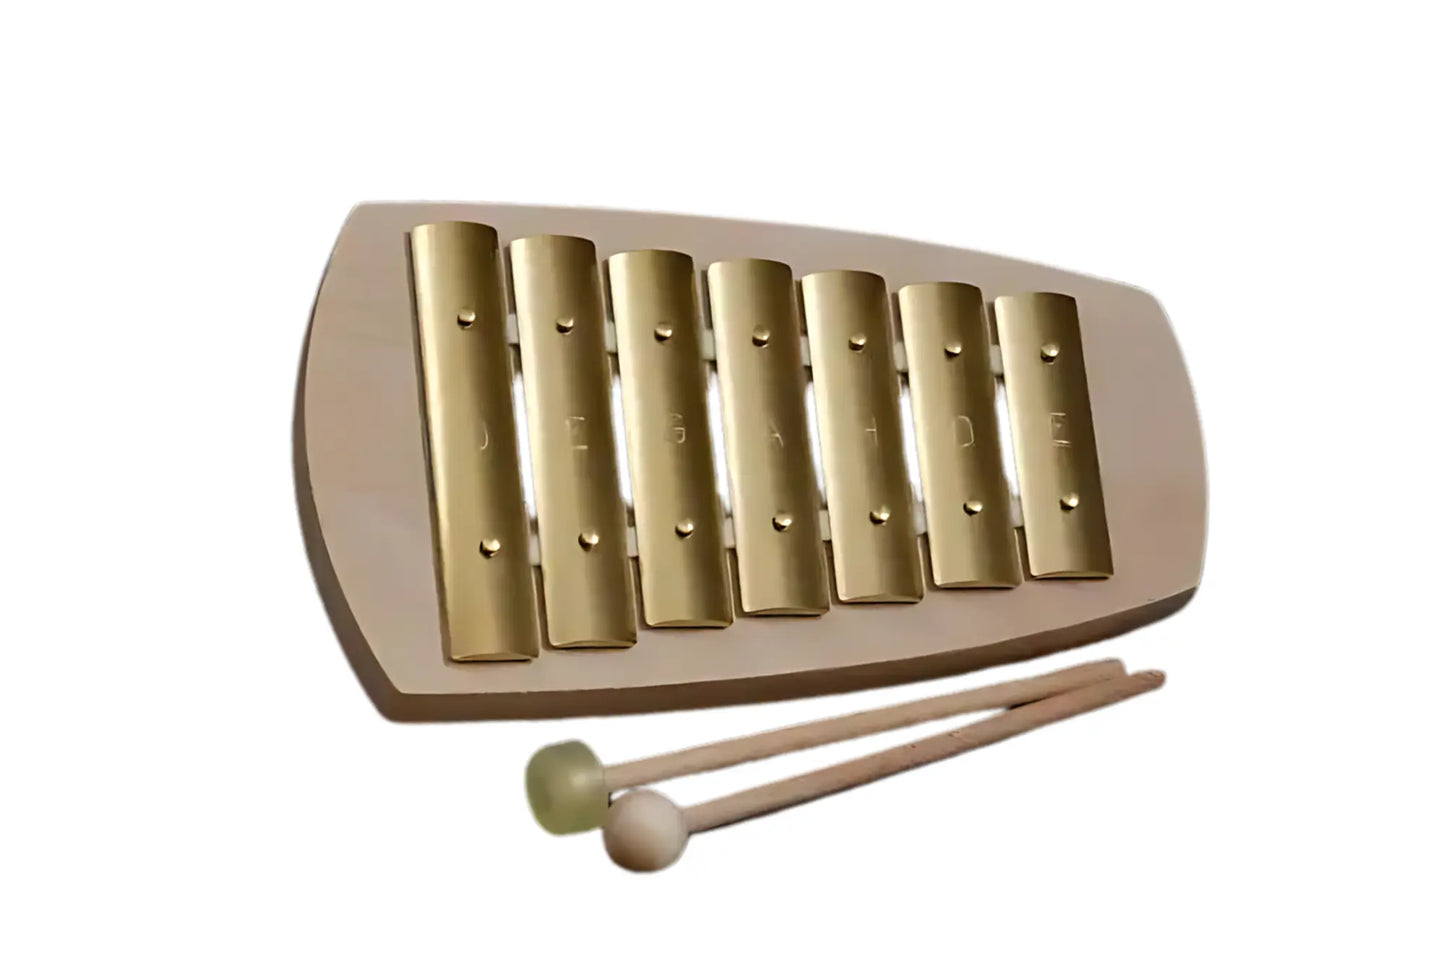  Children’s Glockenspiel - Straight Pentatonic Glockenspiel by Auris - Alder & Alouette